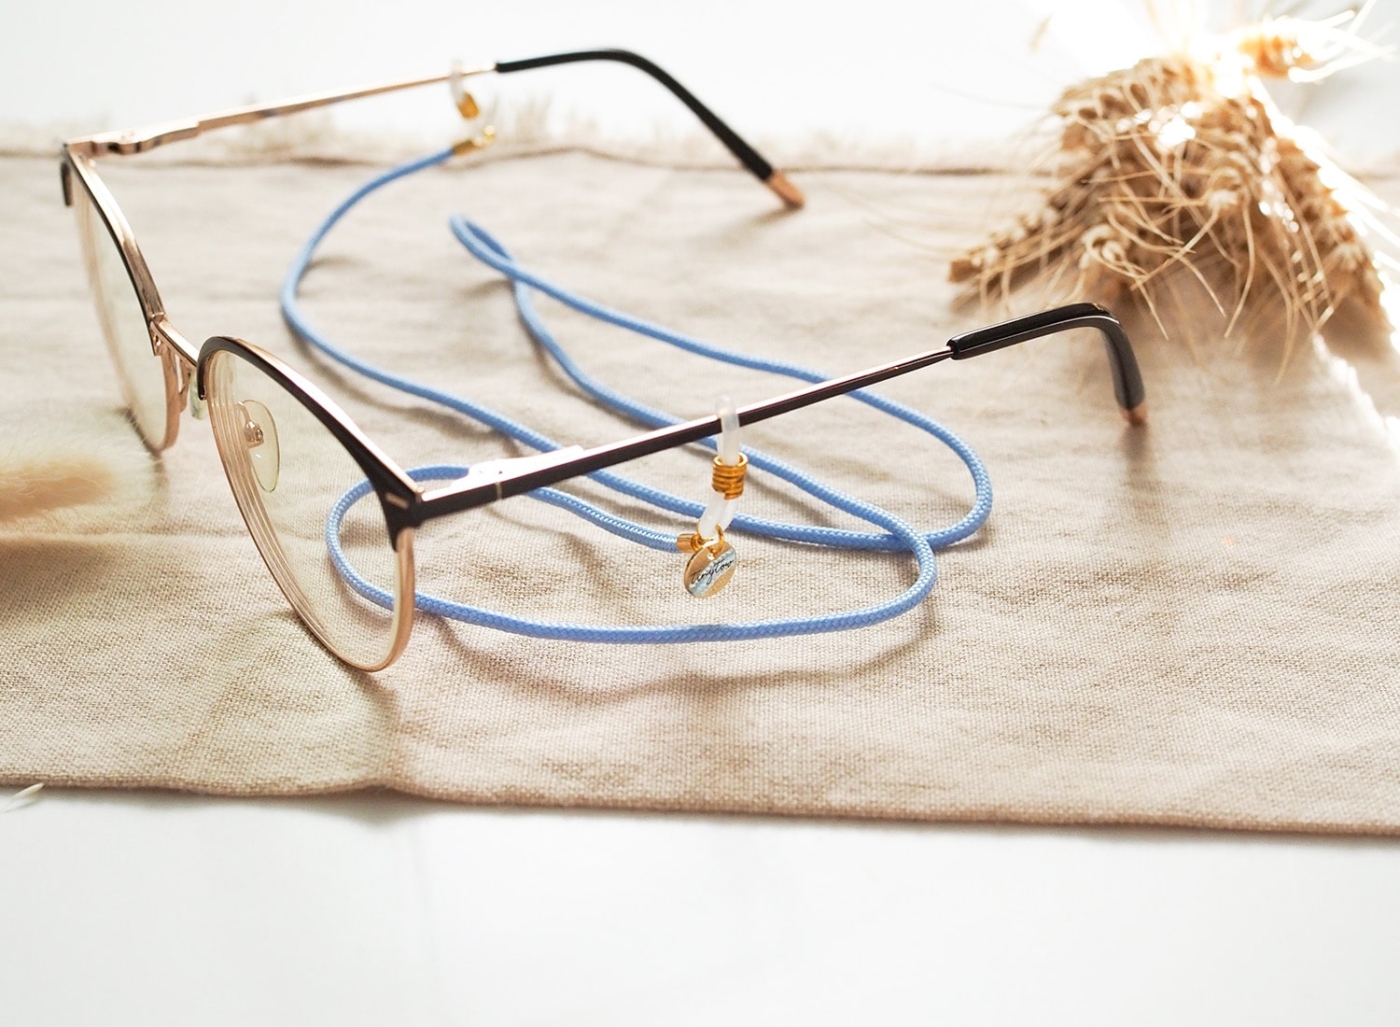 Brillenband hellblau mit goldenen Details und Silikonschlaufen an Brille.